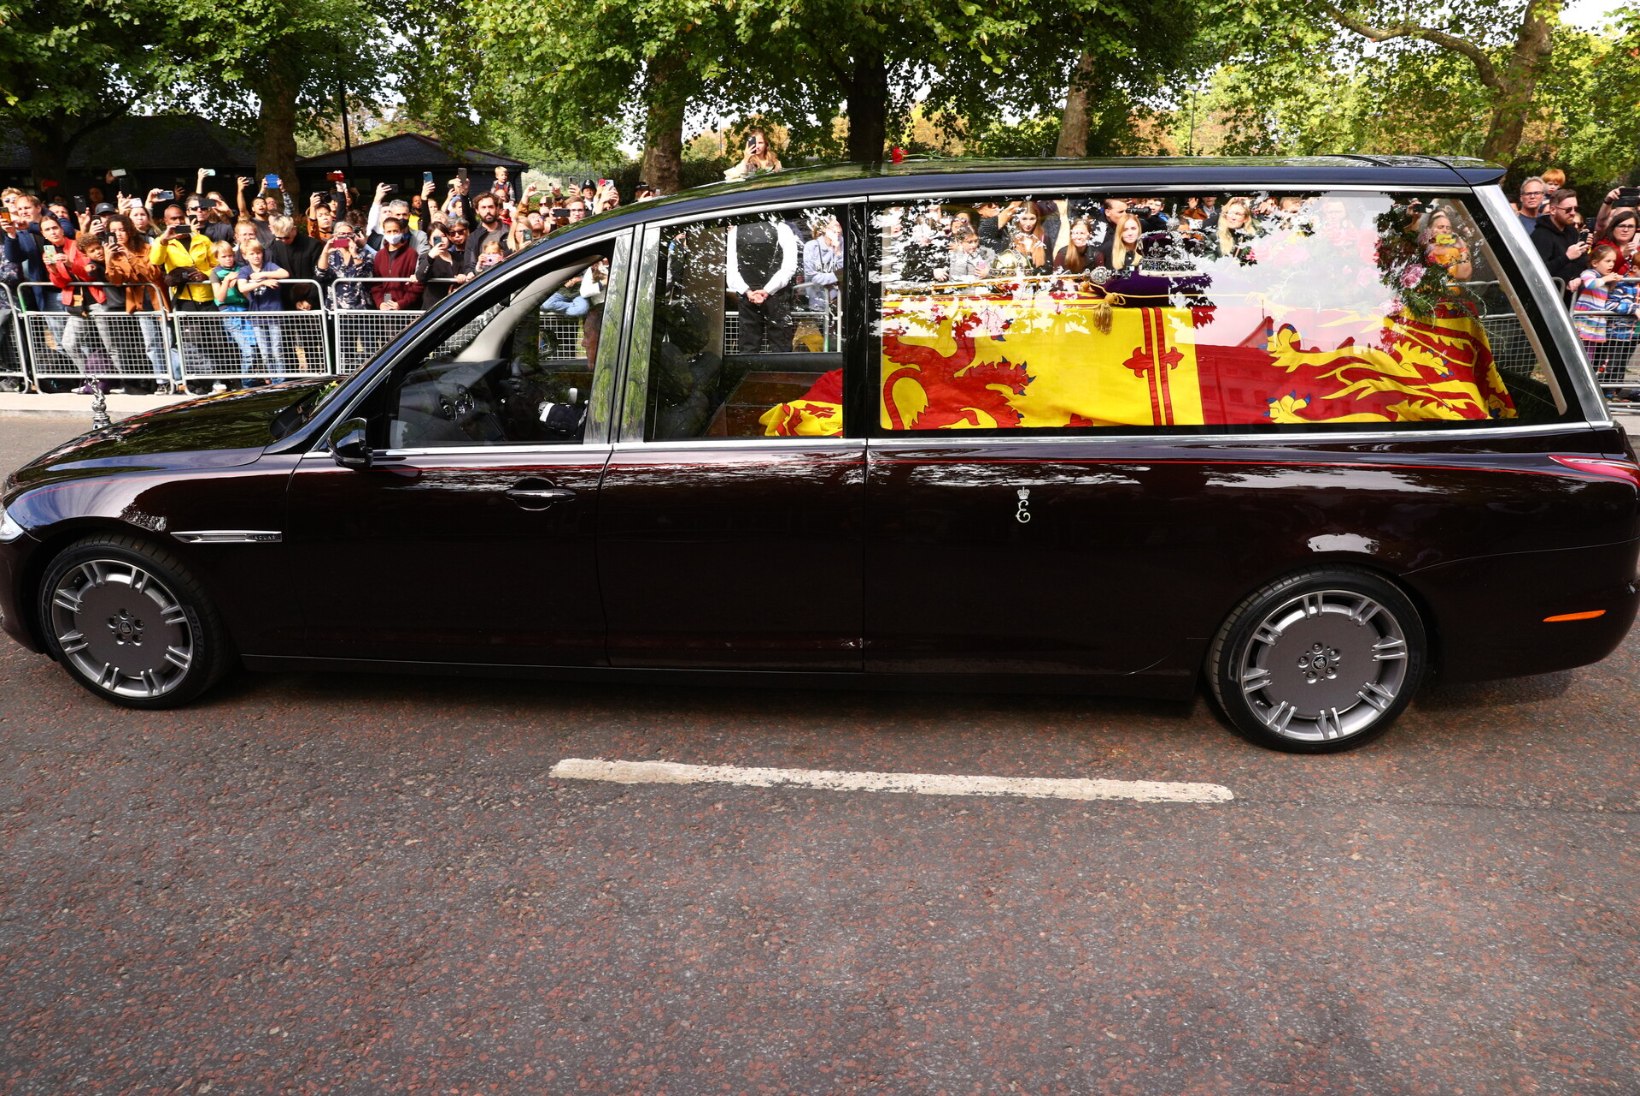 BLOGI JA FOTOD | KUNINGANNA LAHKUS LONDONIST VIIMAST KORDA! Elizabeth II maeti oma kalli abikaasa kõrvale